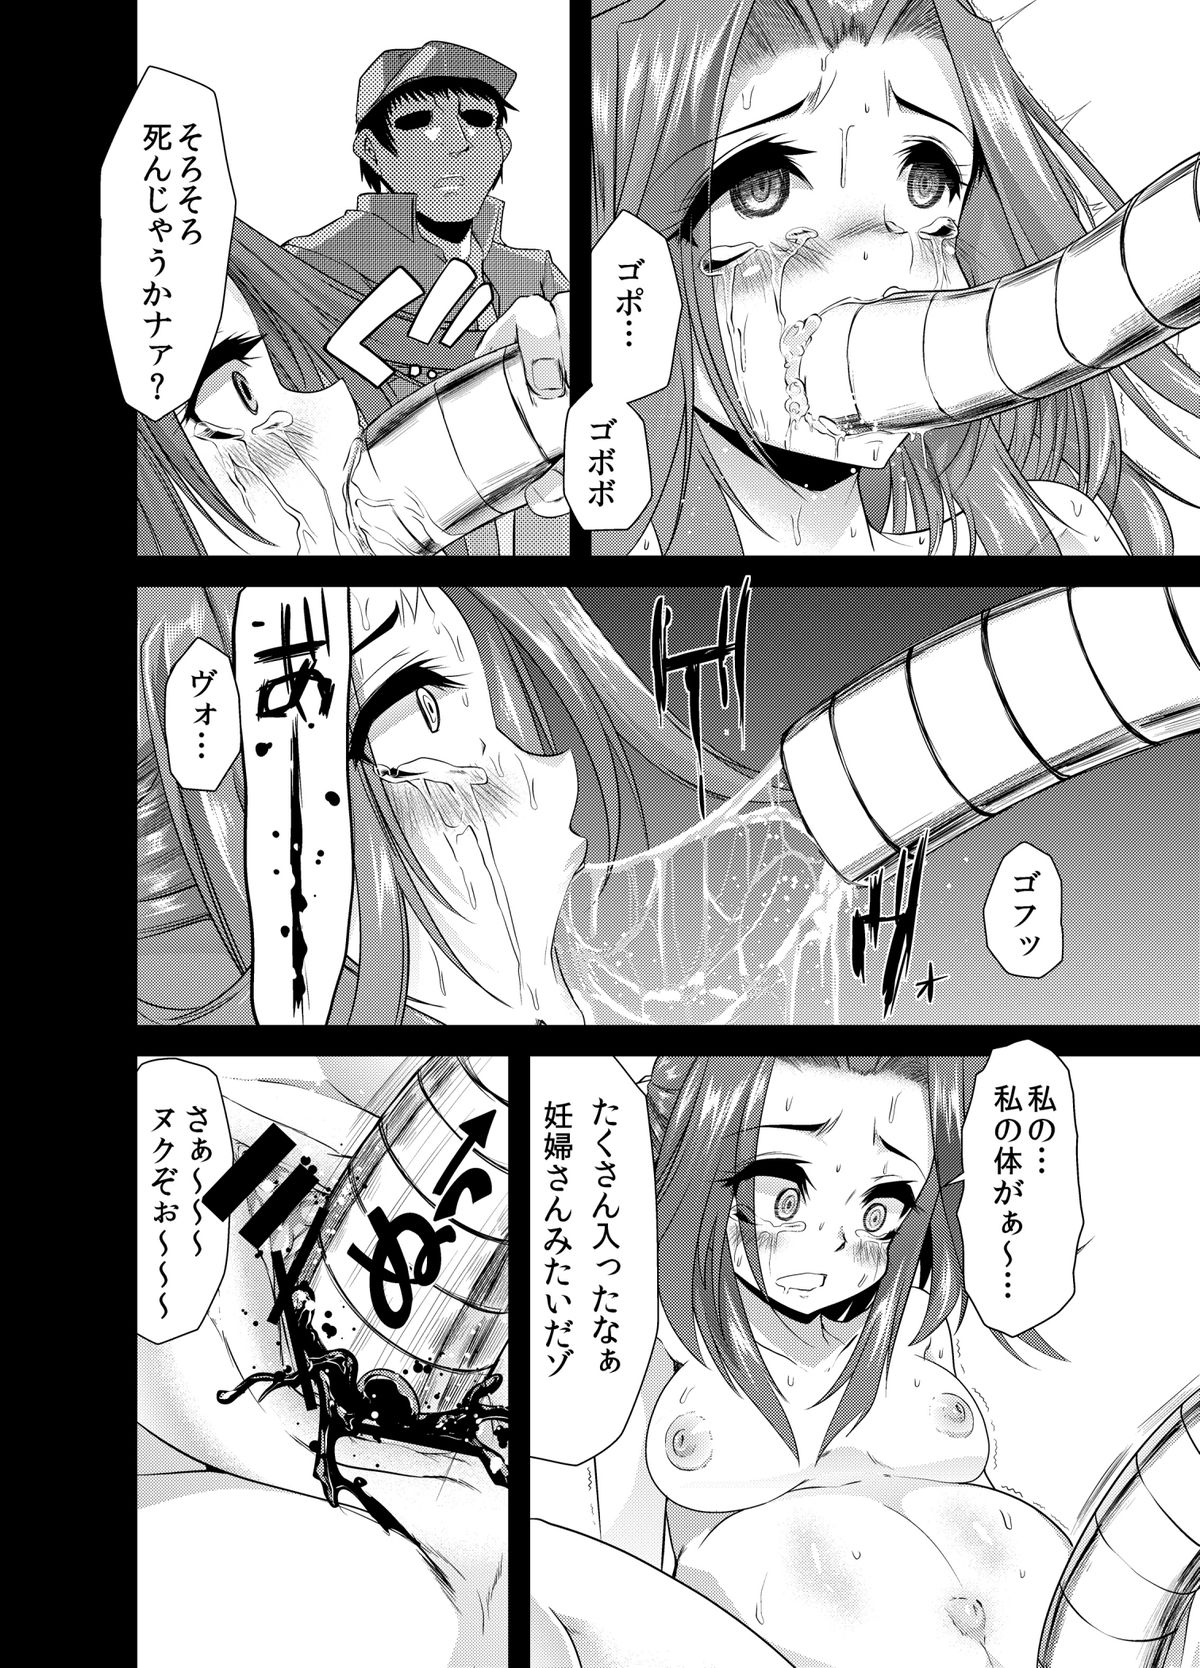 DL_manga_18 j